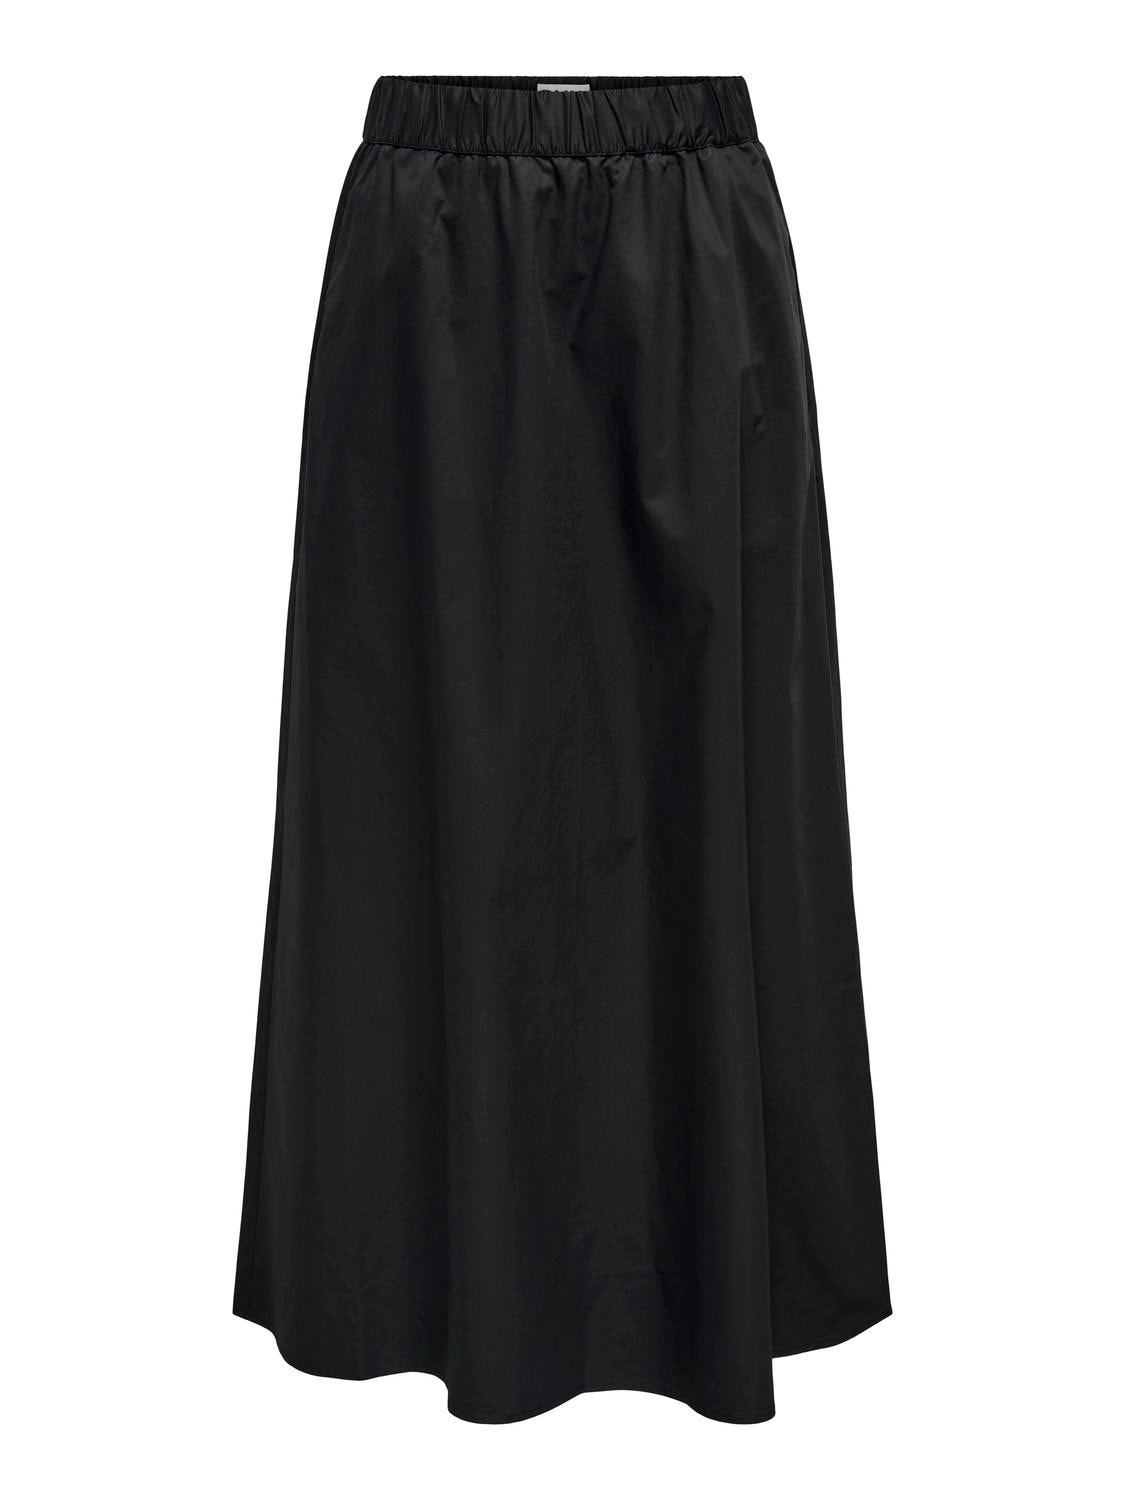 ONLY High waist Long skirt -Black - 15327600